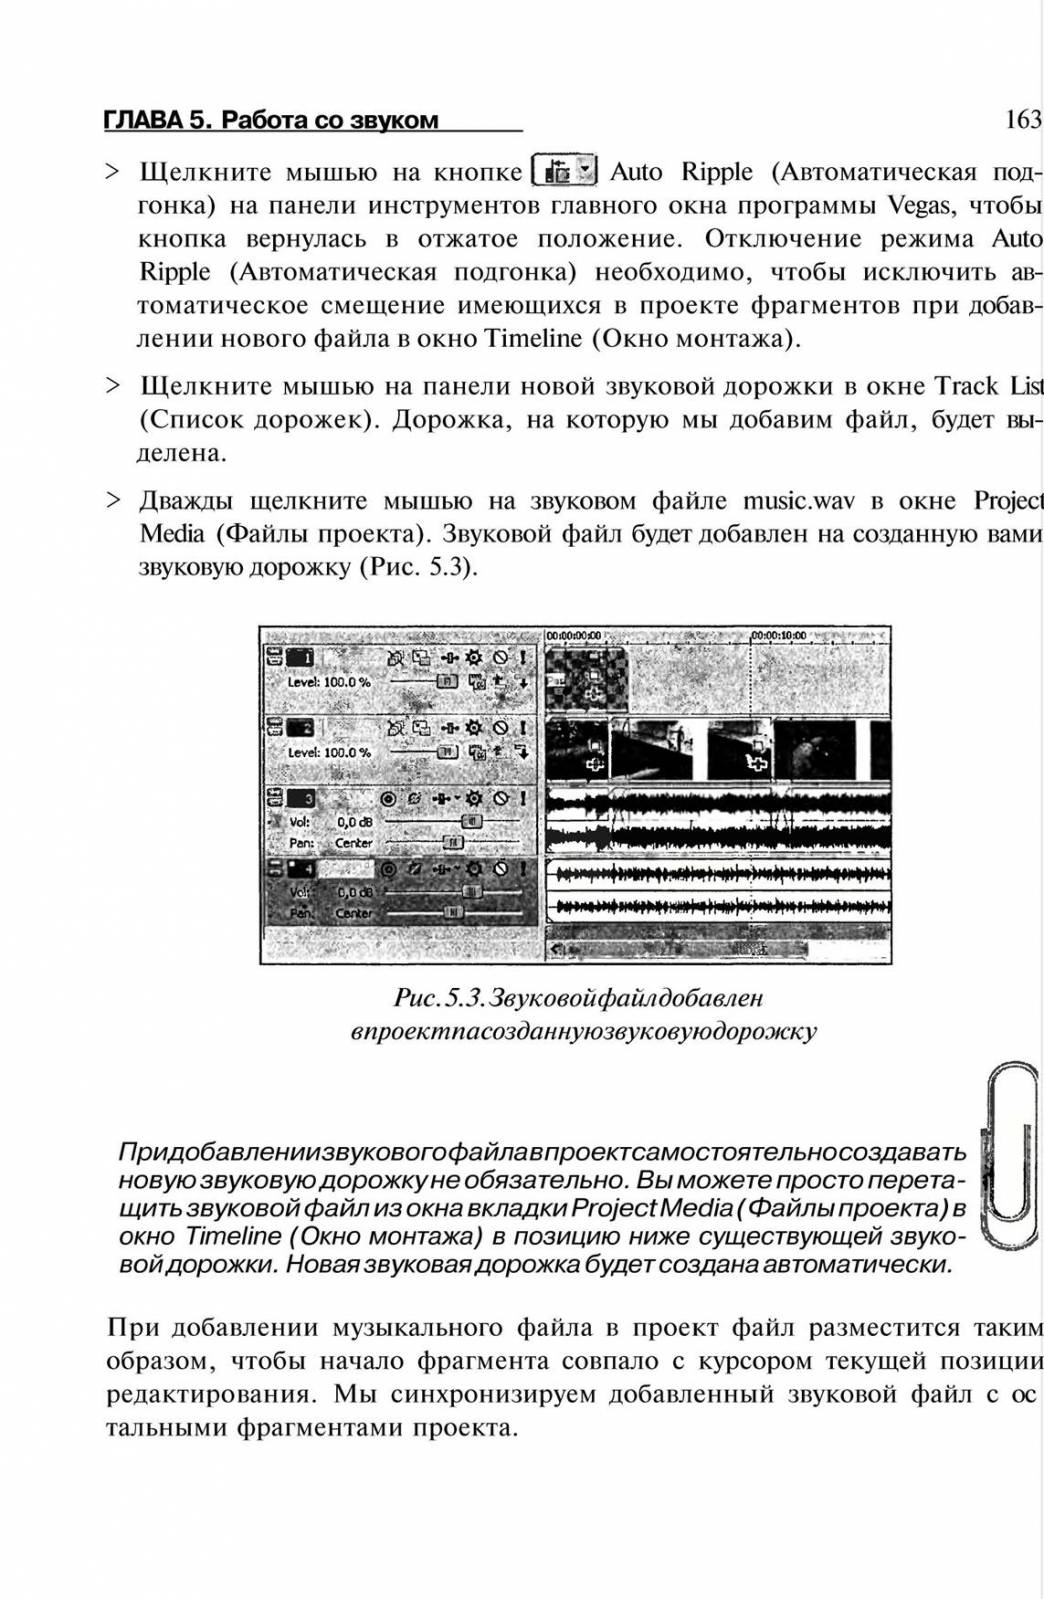 http://redaktori-uroki.3dn.ru/_ph/6/139186320.jpg